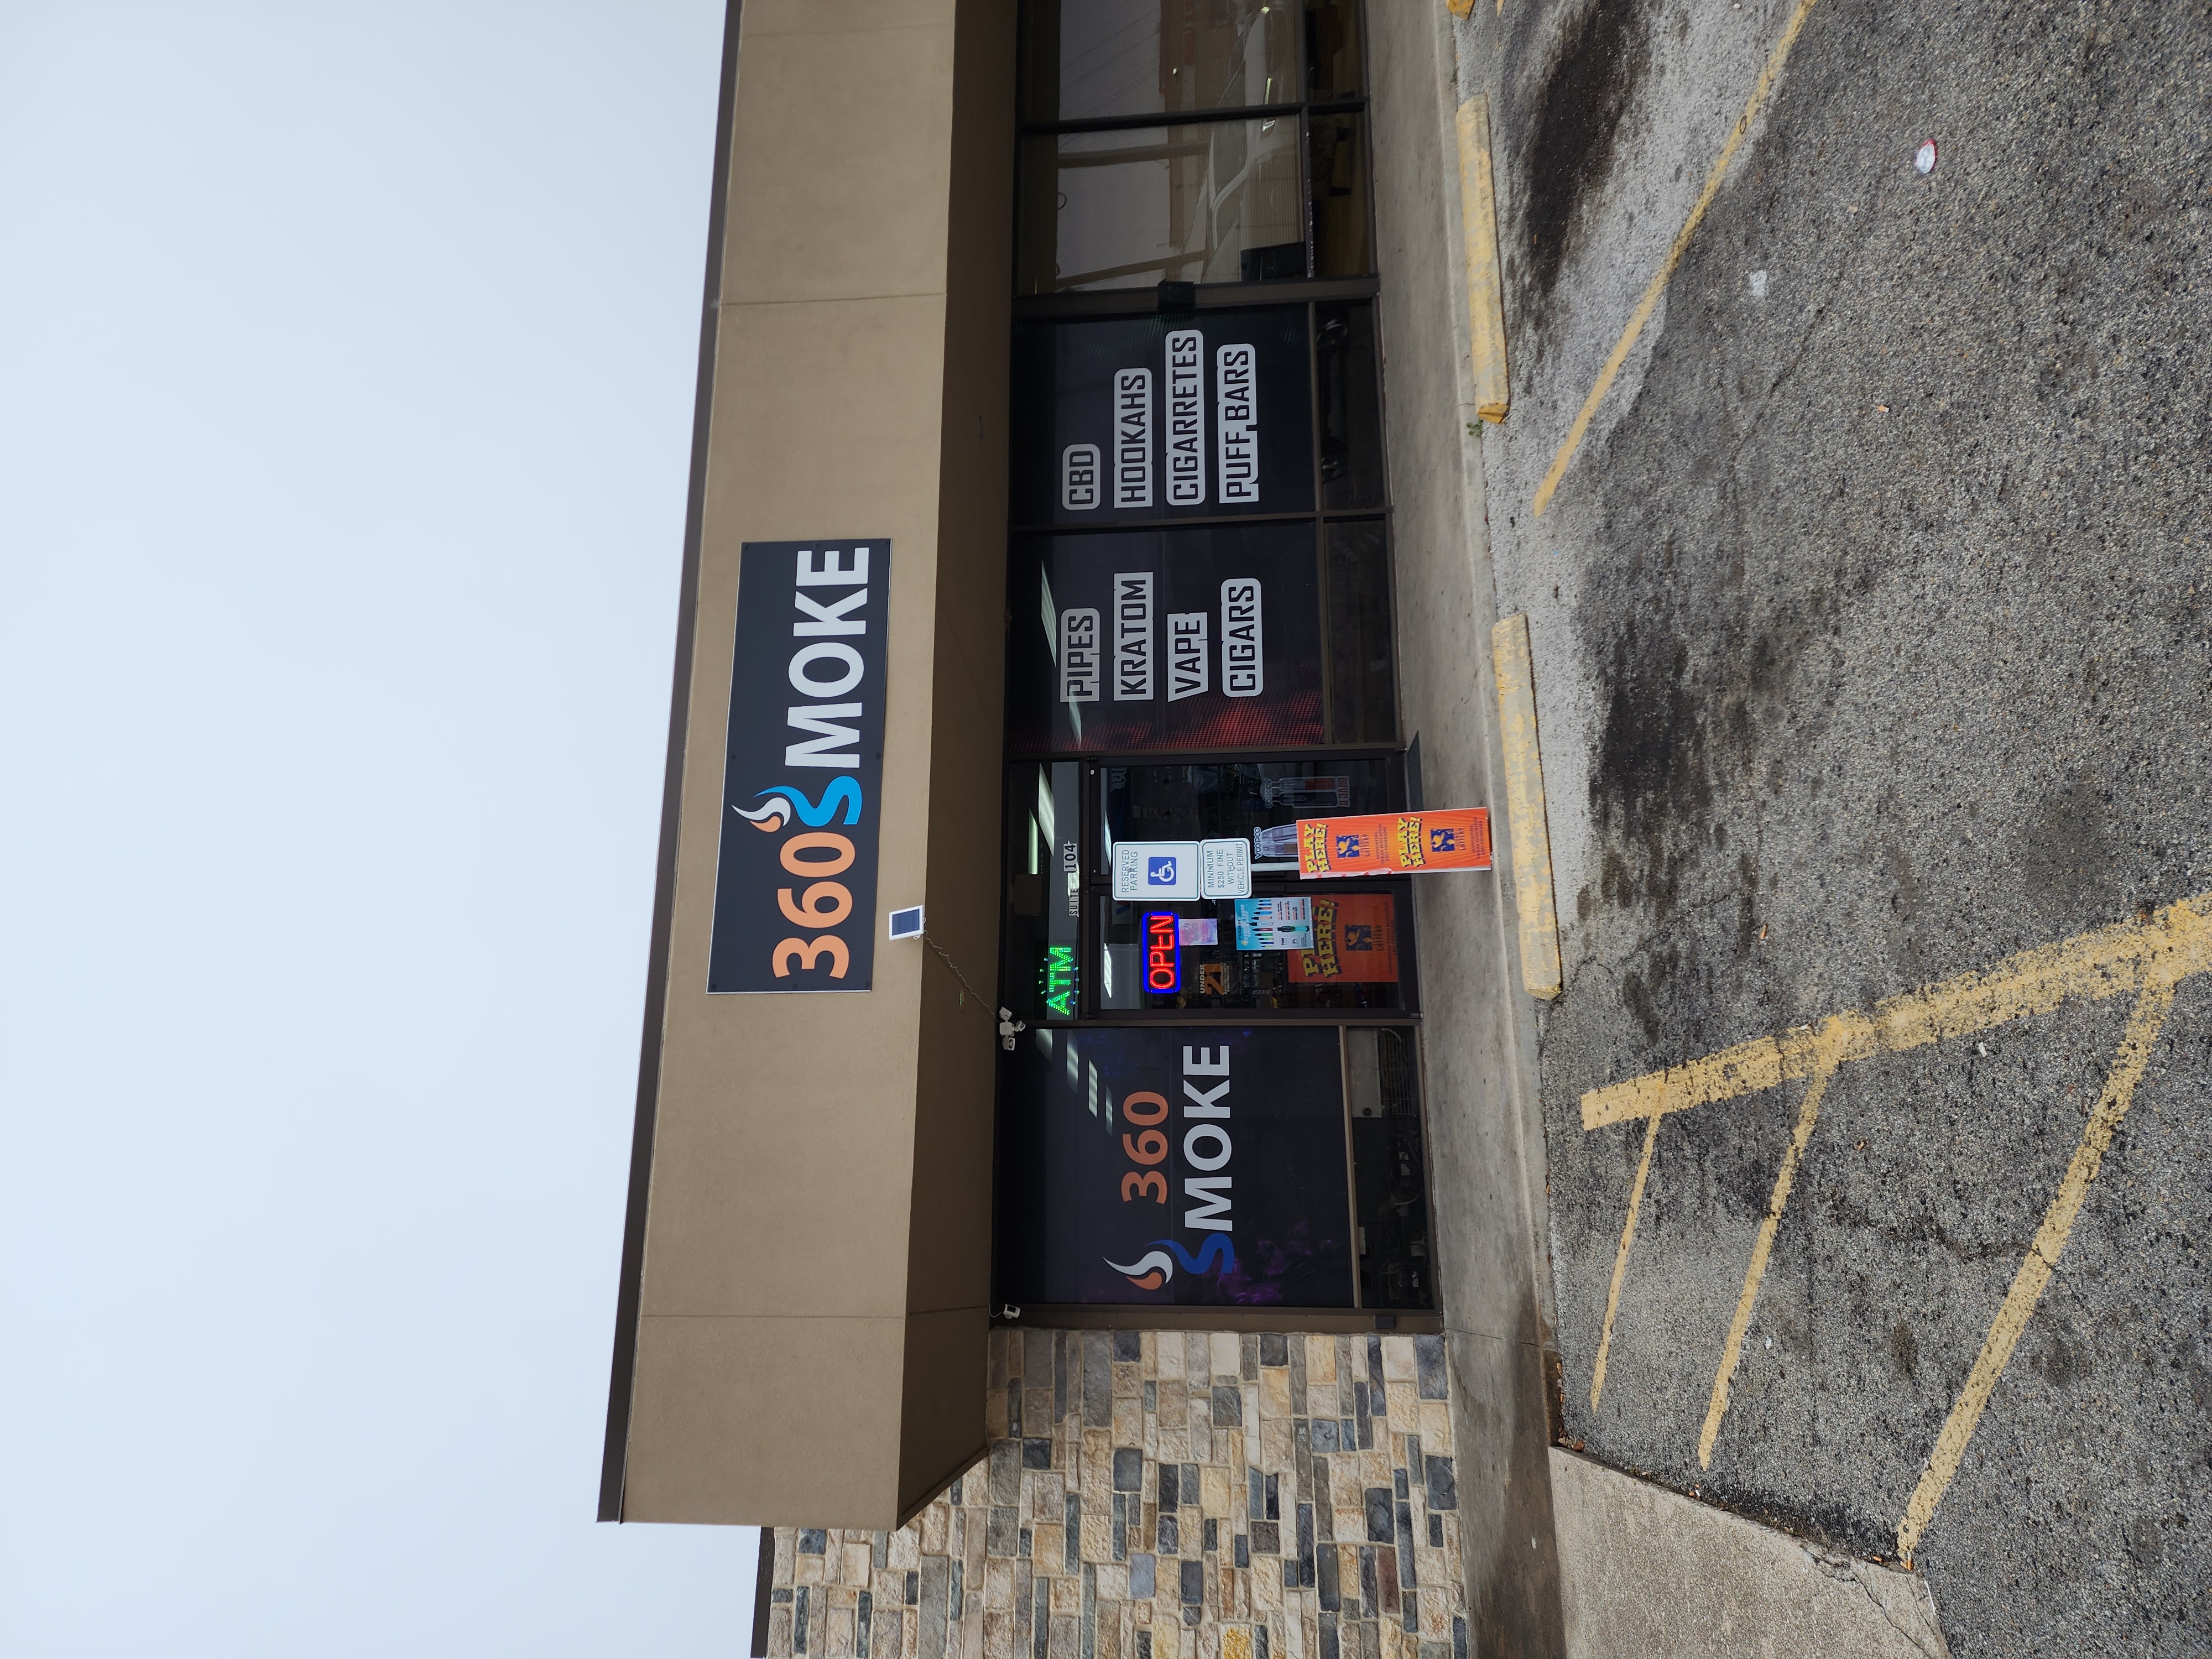 Getcoins - Bitcoin ATM - Inside of 360 Smoke Shop in Denton, Texas